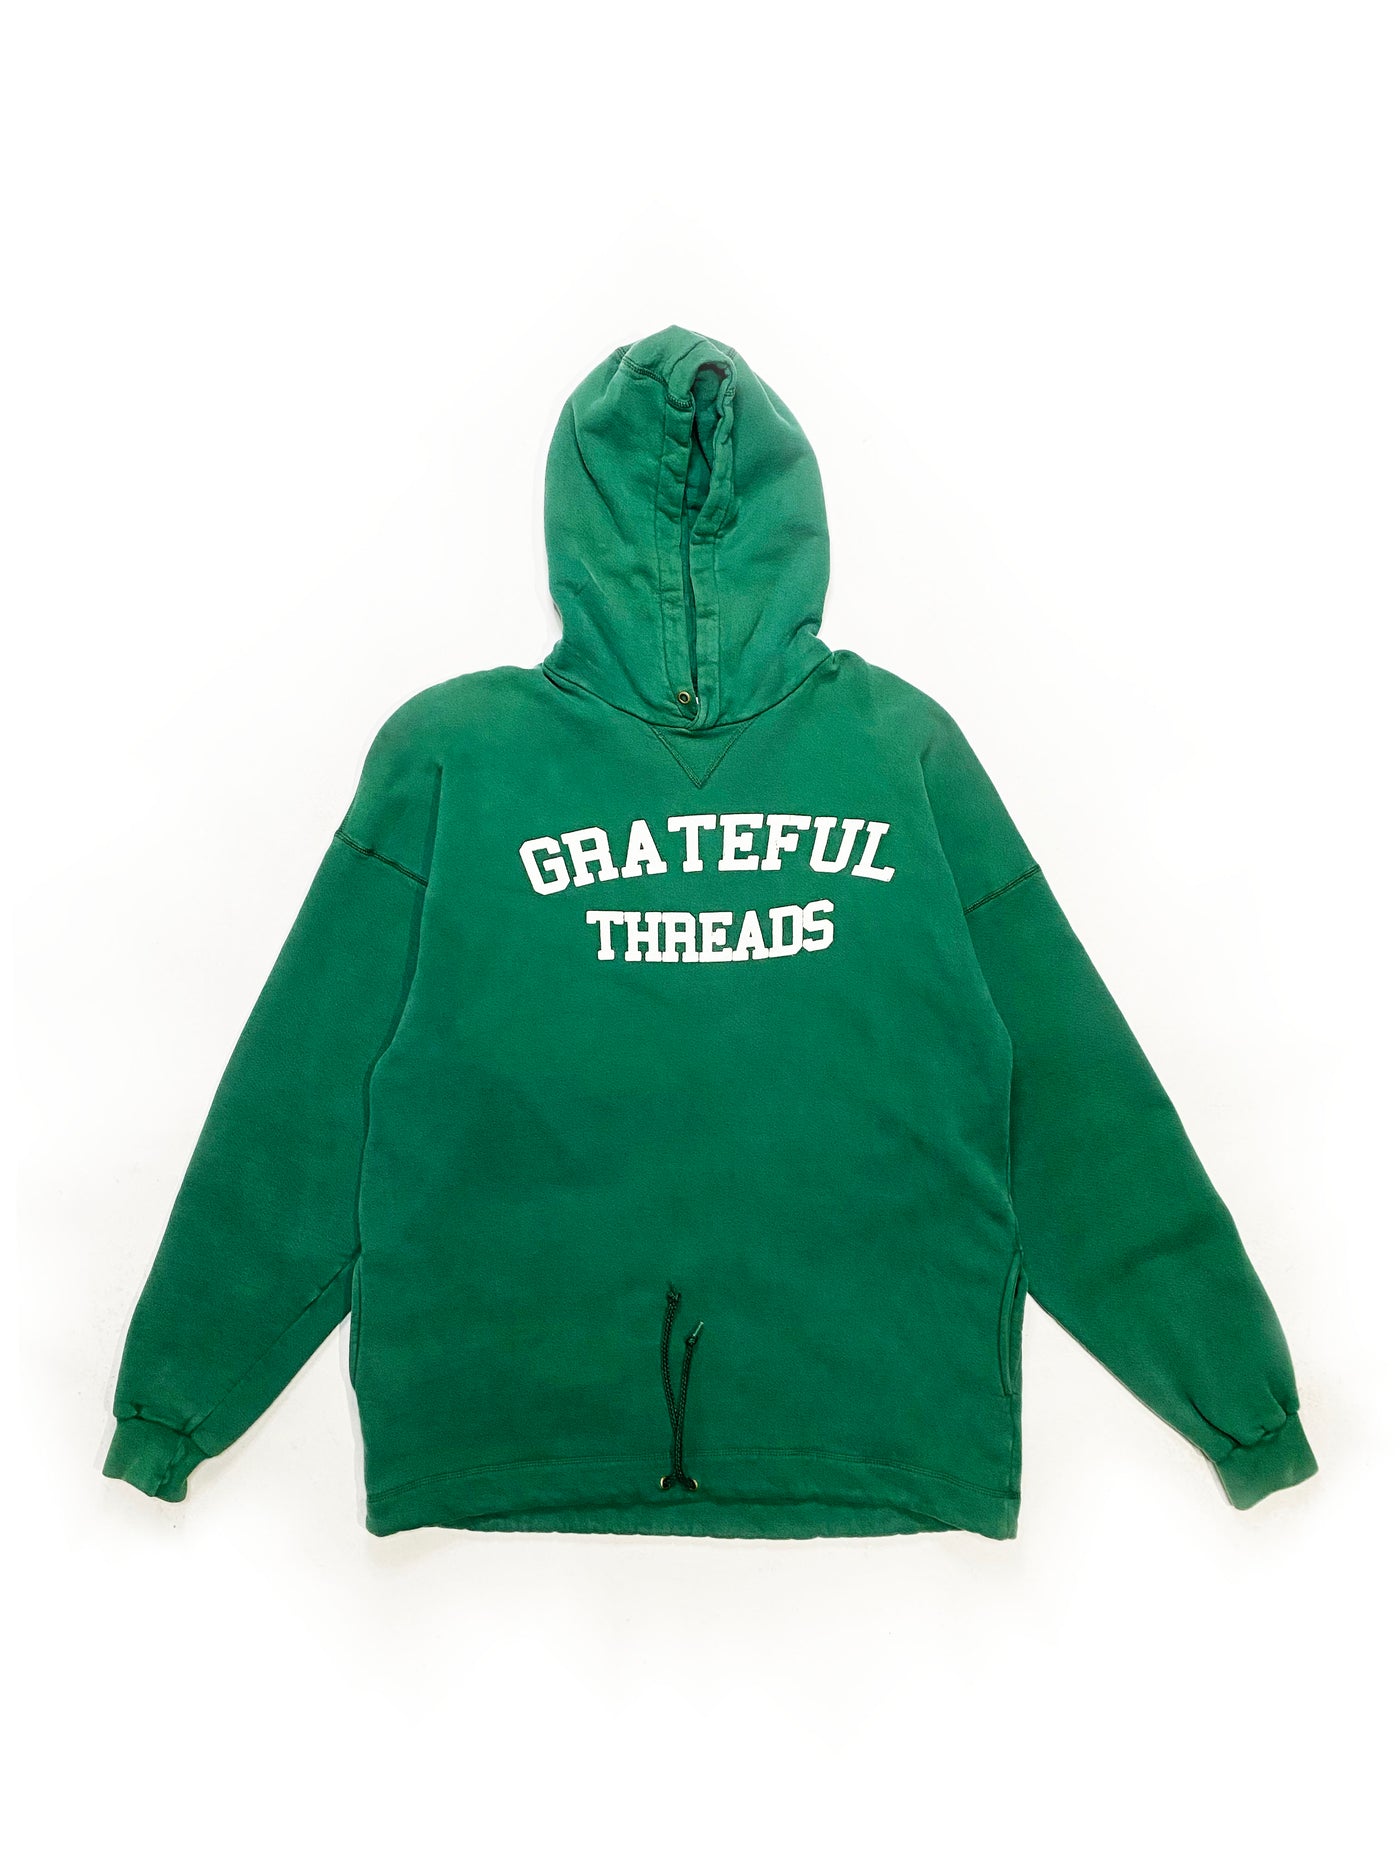 90s LL Bean x Russell Grateful Threads Spellout Hoodie - Green - XL